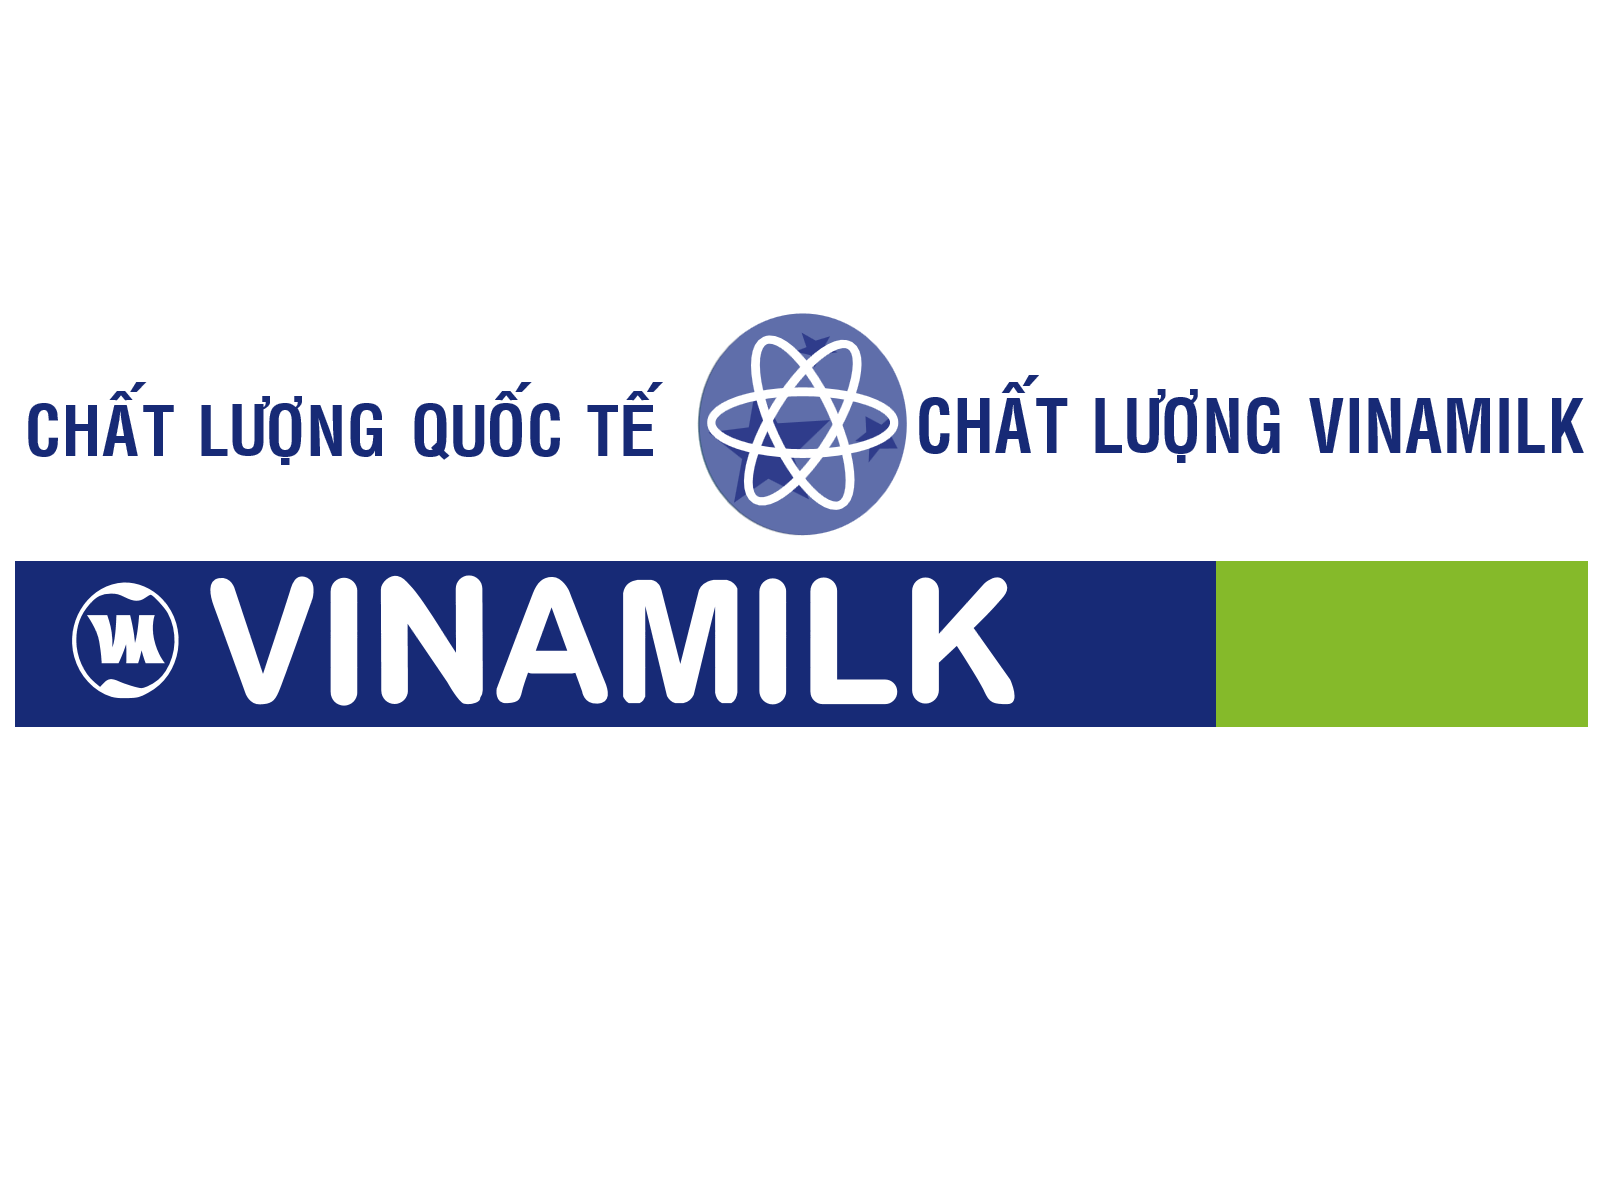 Vinamilk Logo PNG-PlusPNG.com